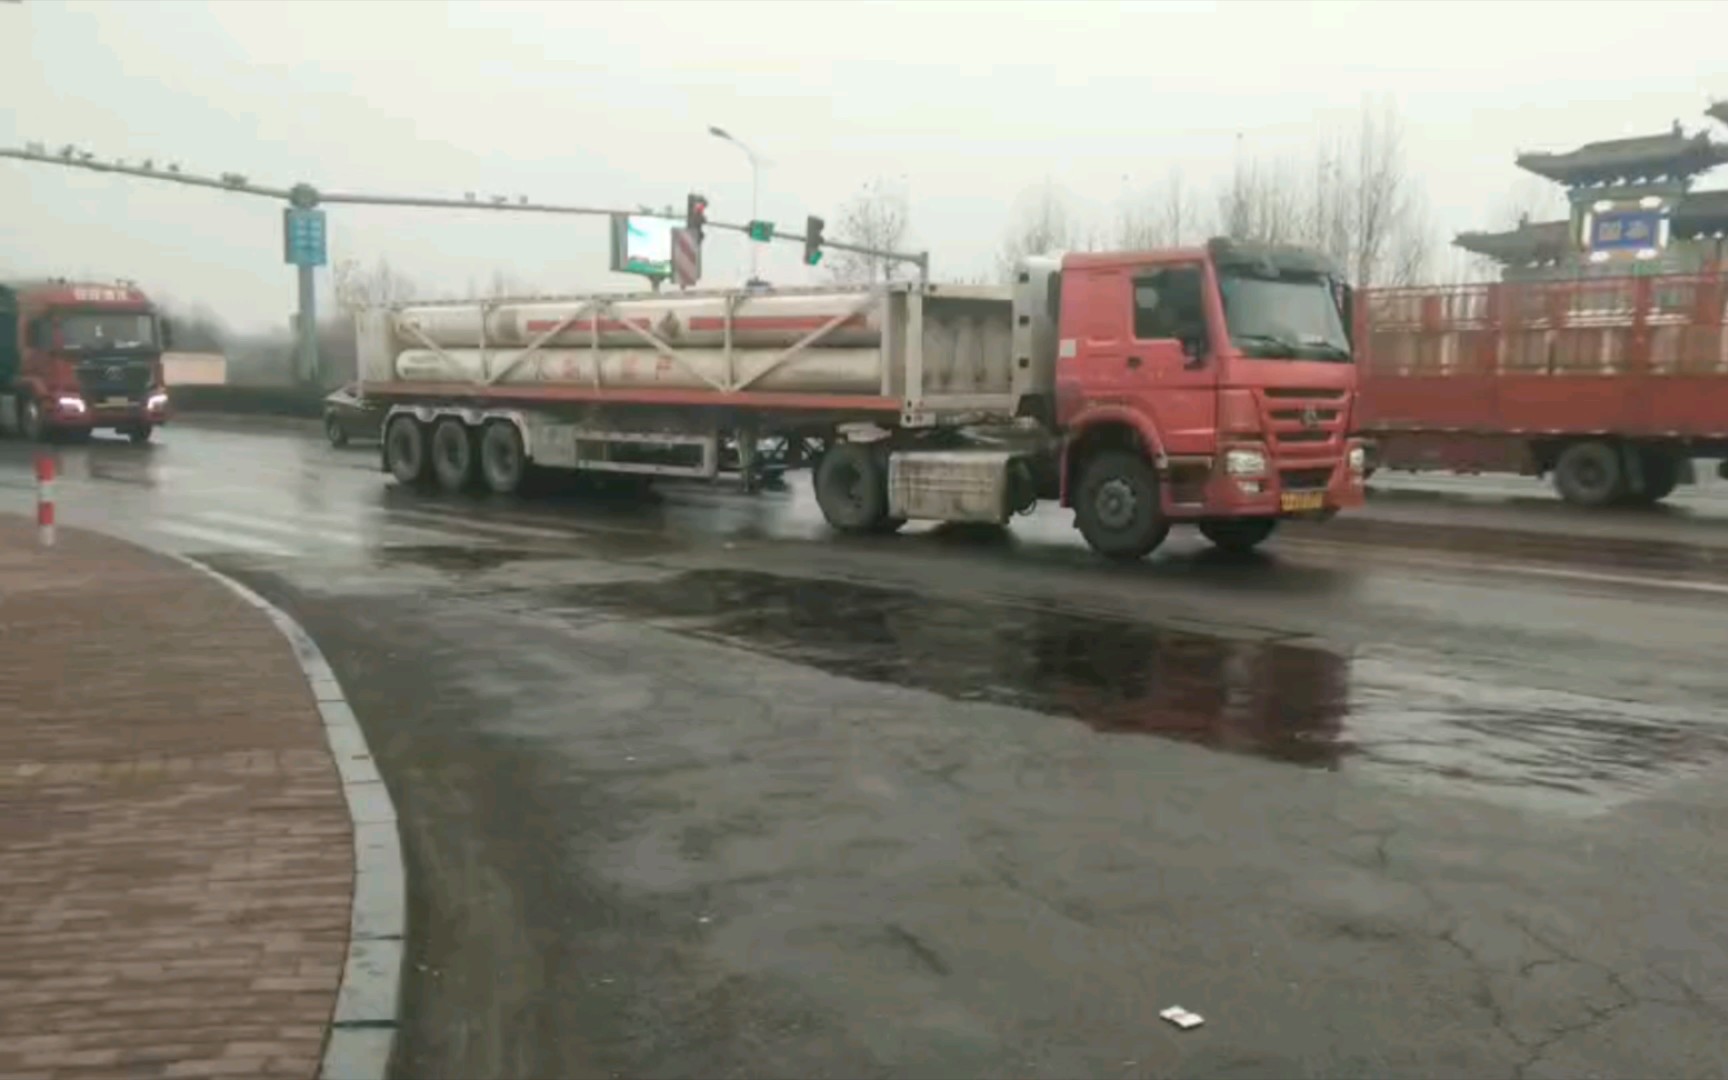 【中国卡车】 中卡拍车#33  跟着UP主一起来拍卡车吧，今天下雨了，司机朋友们一定要注意安全，谨慎驾驶